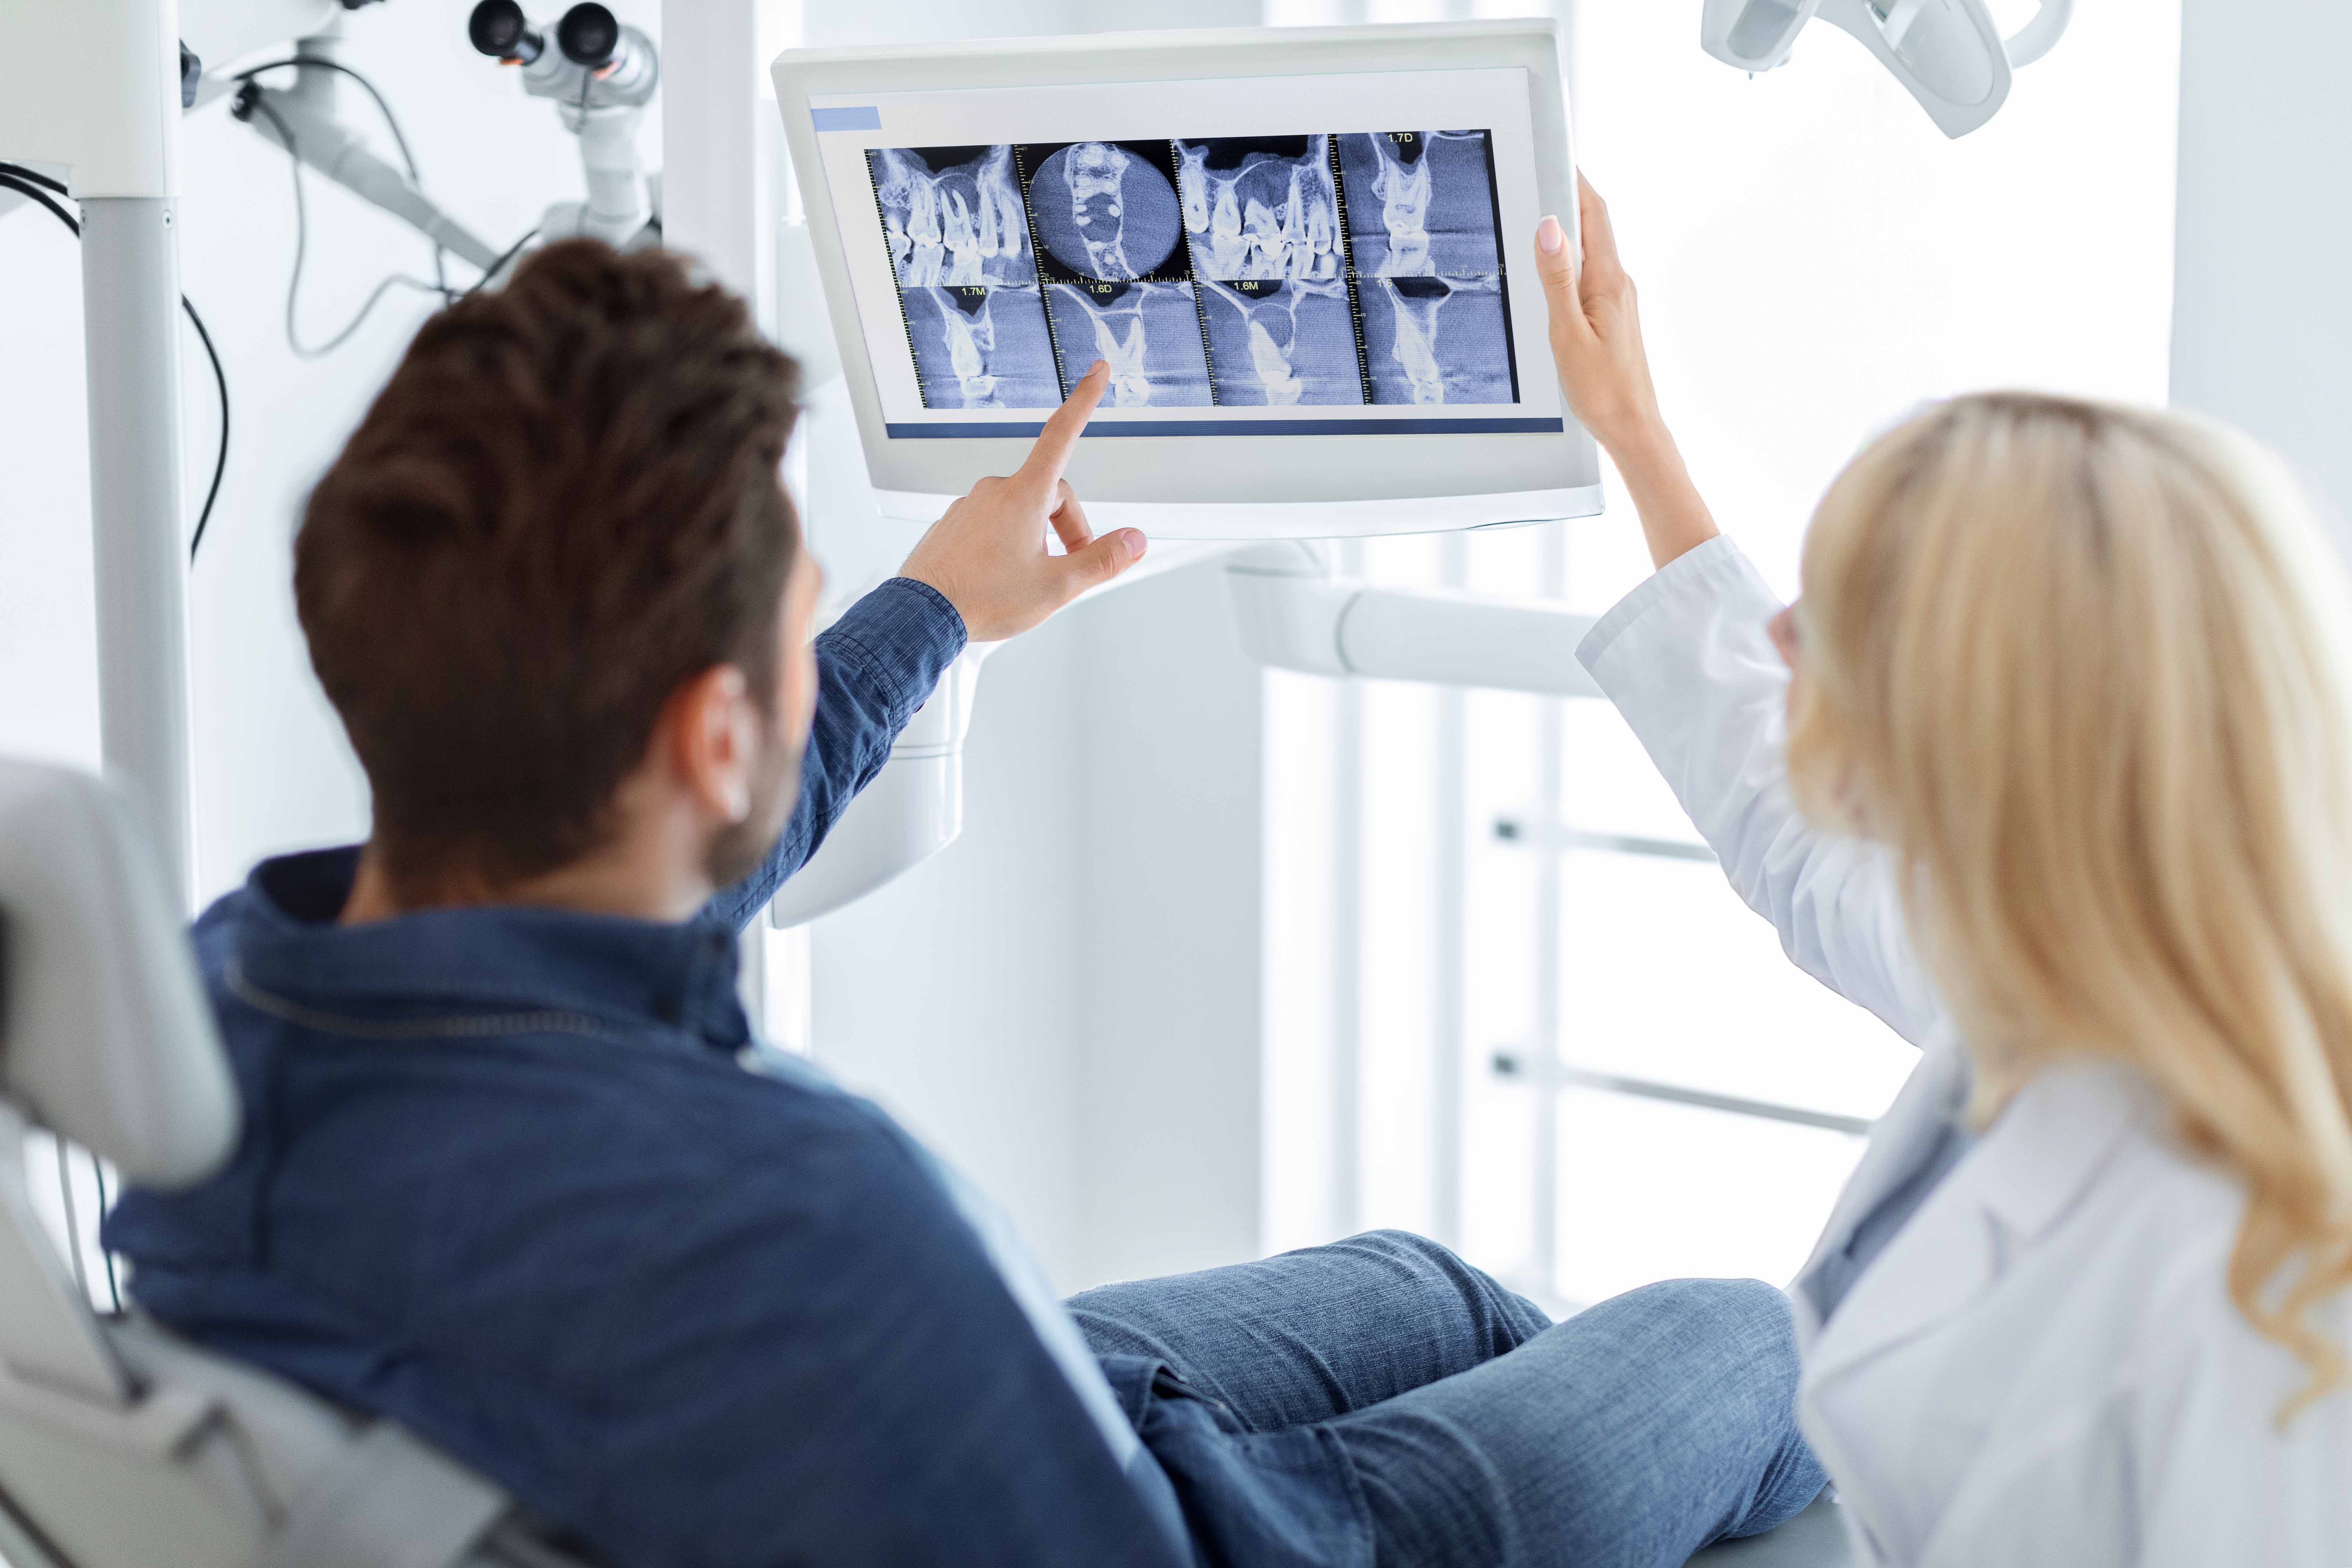 歯のレントゲン写真を見ている男性患者と女性歯科医師